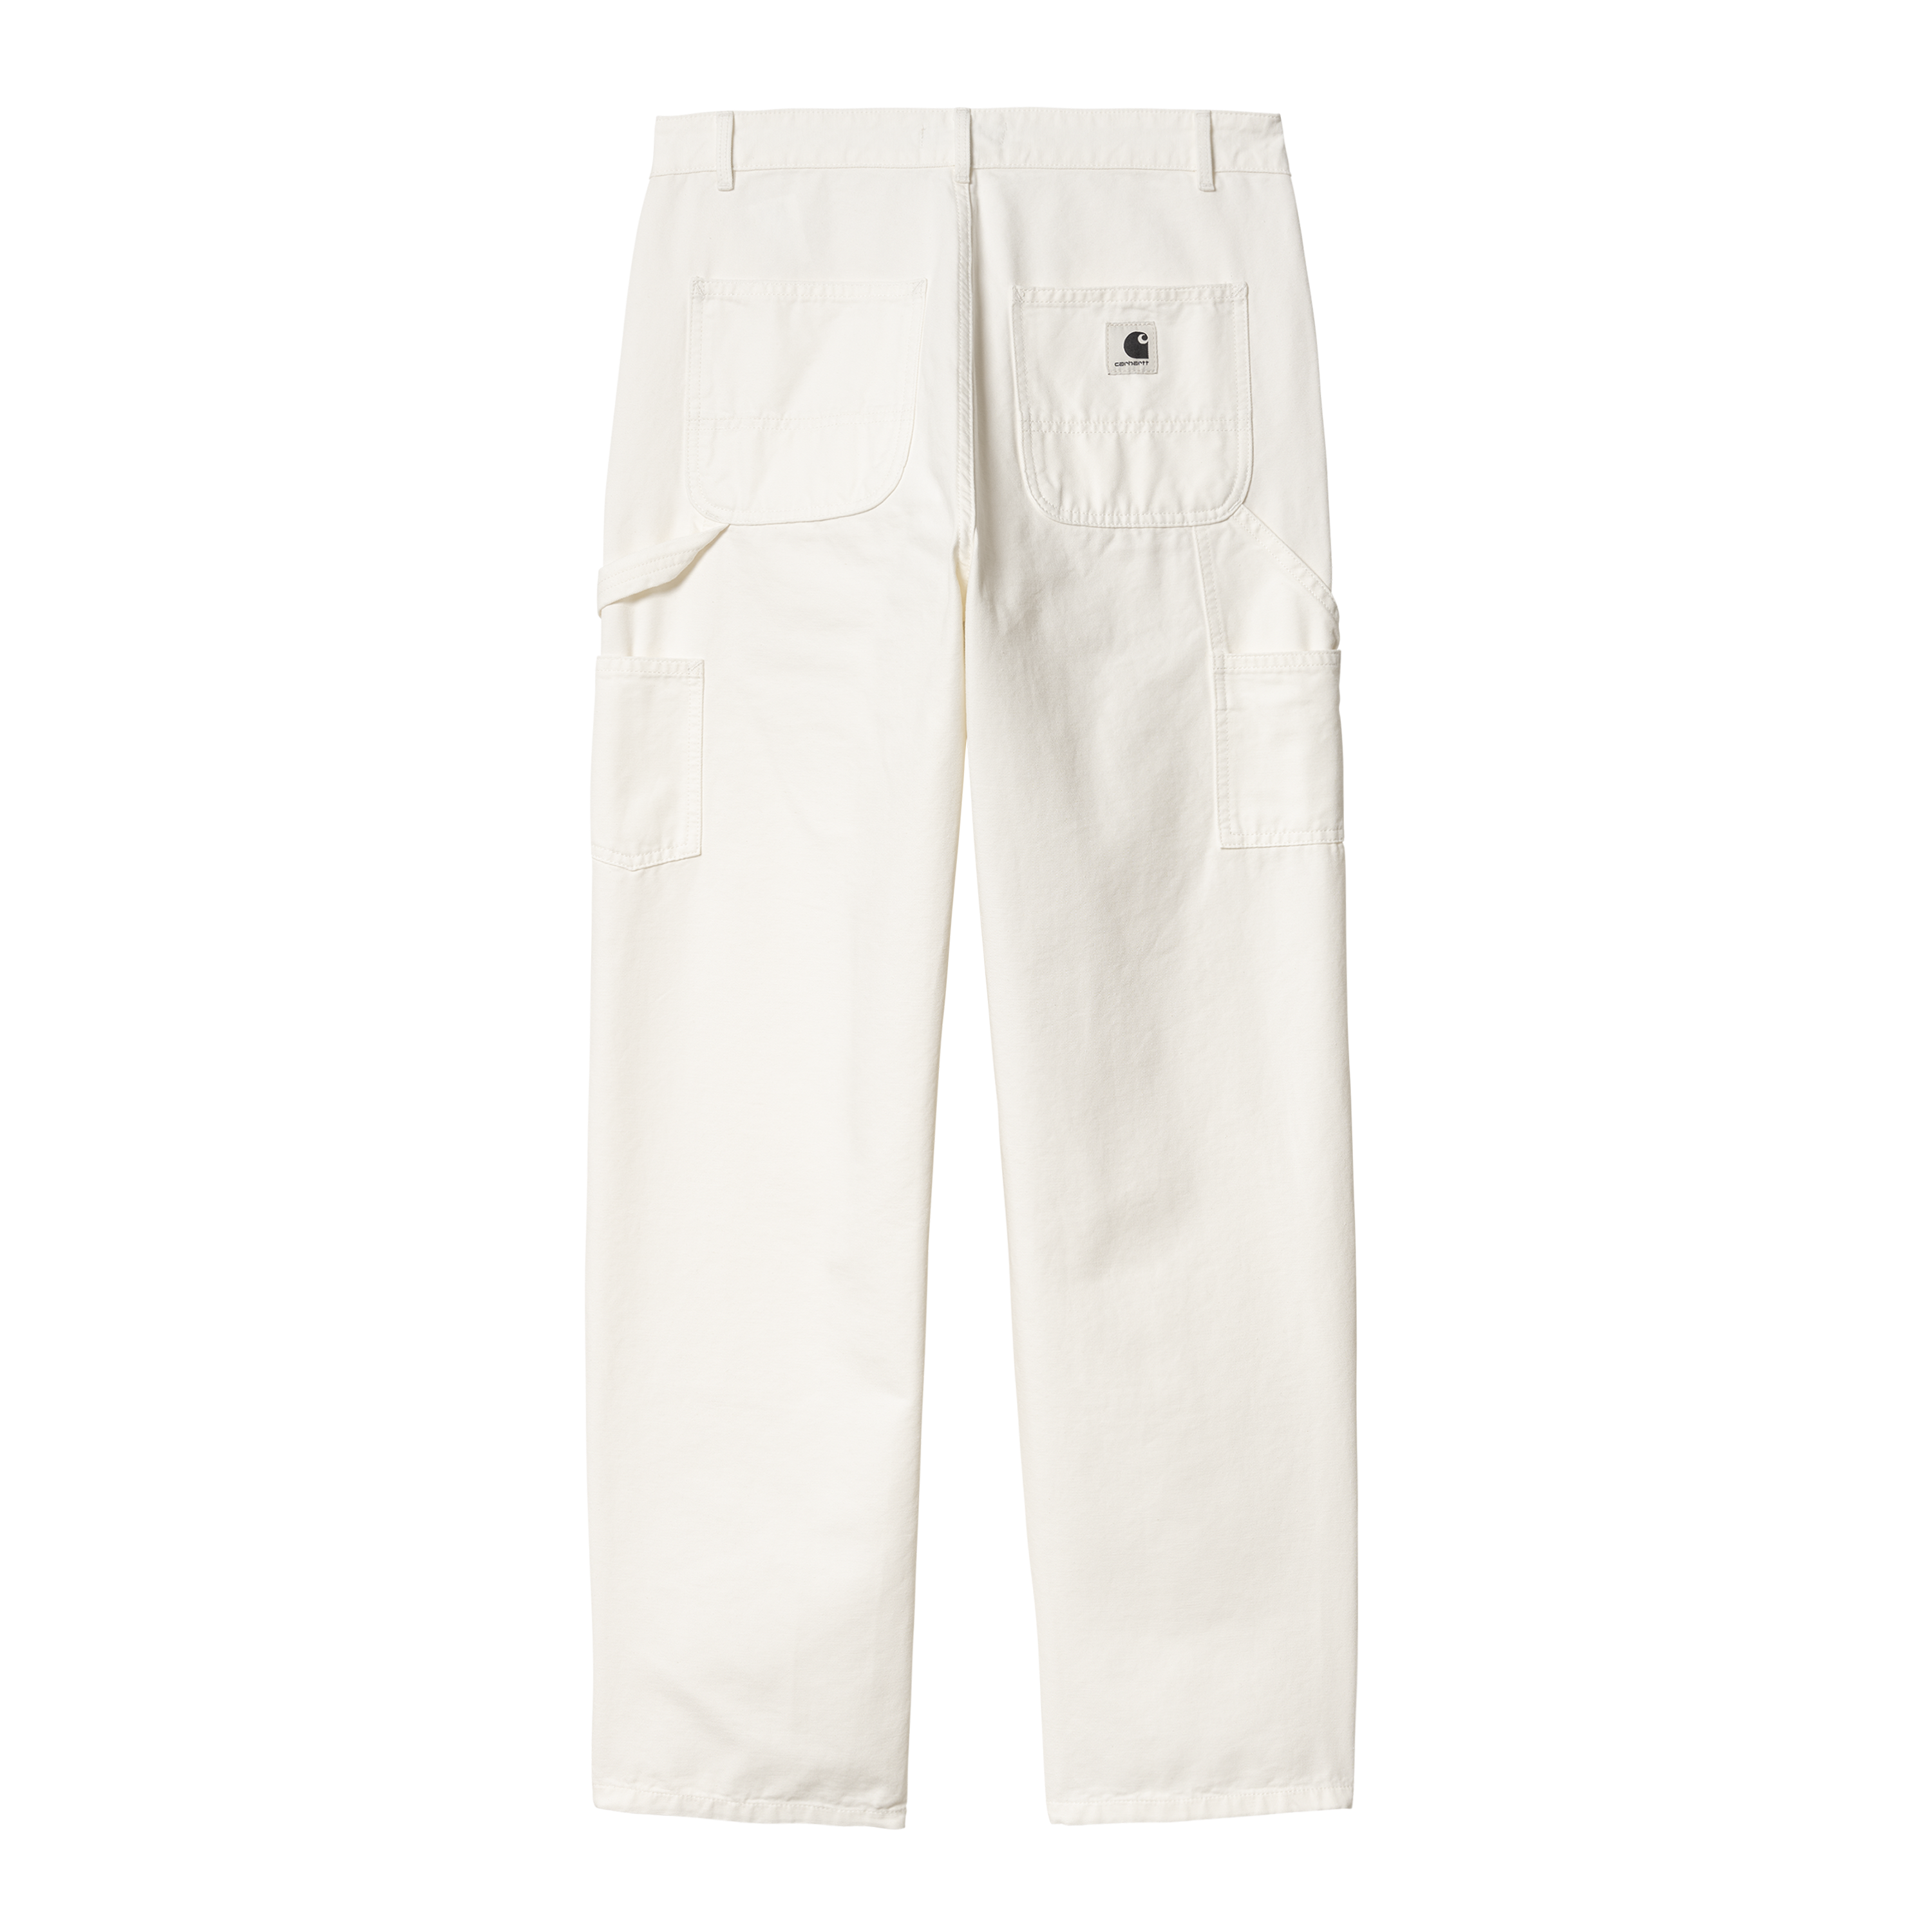 Carhartt WIP Women’s Pierce Double Knee Pant in Bianco